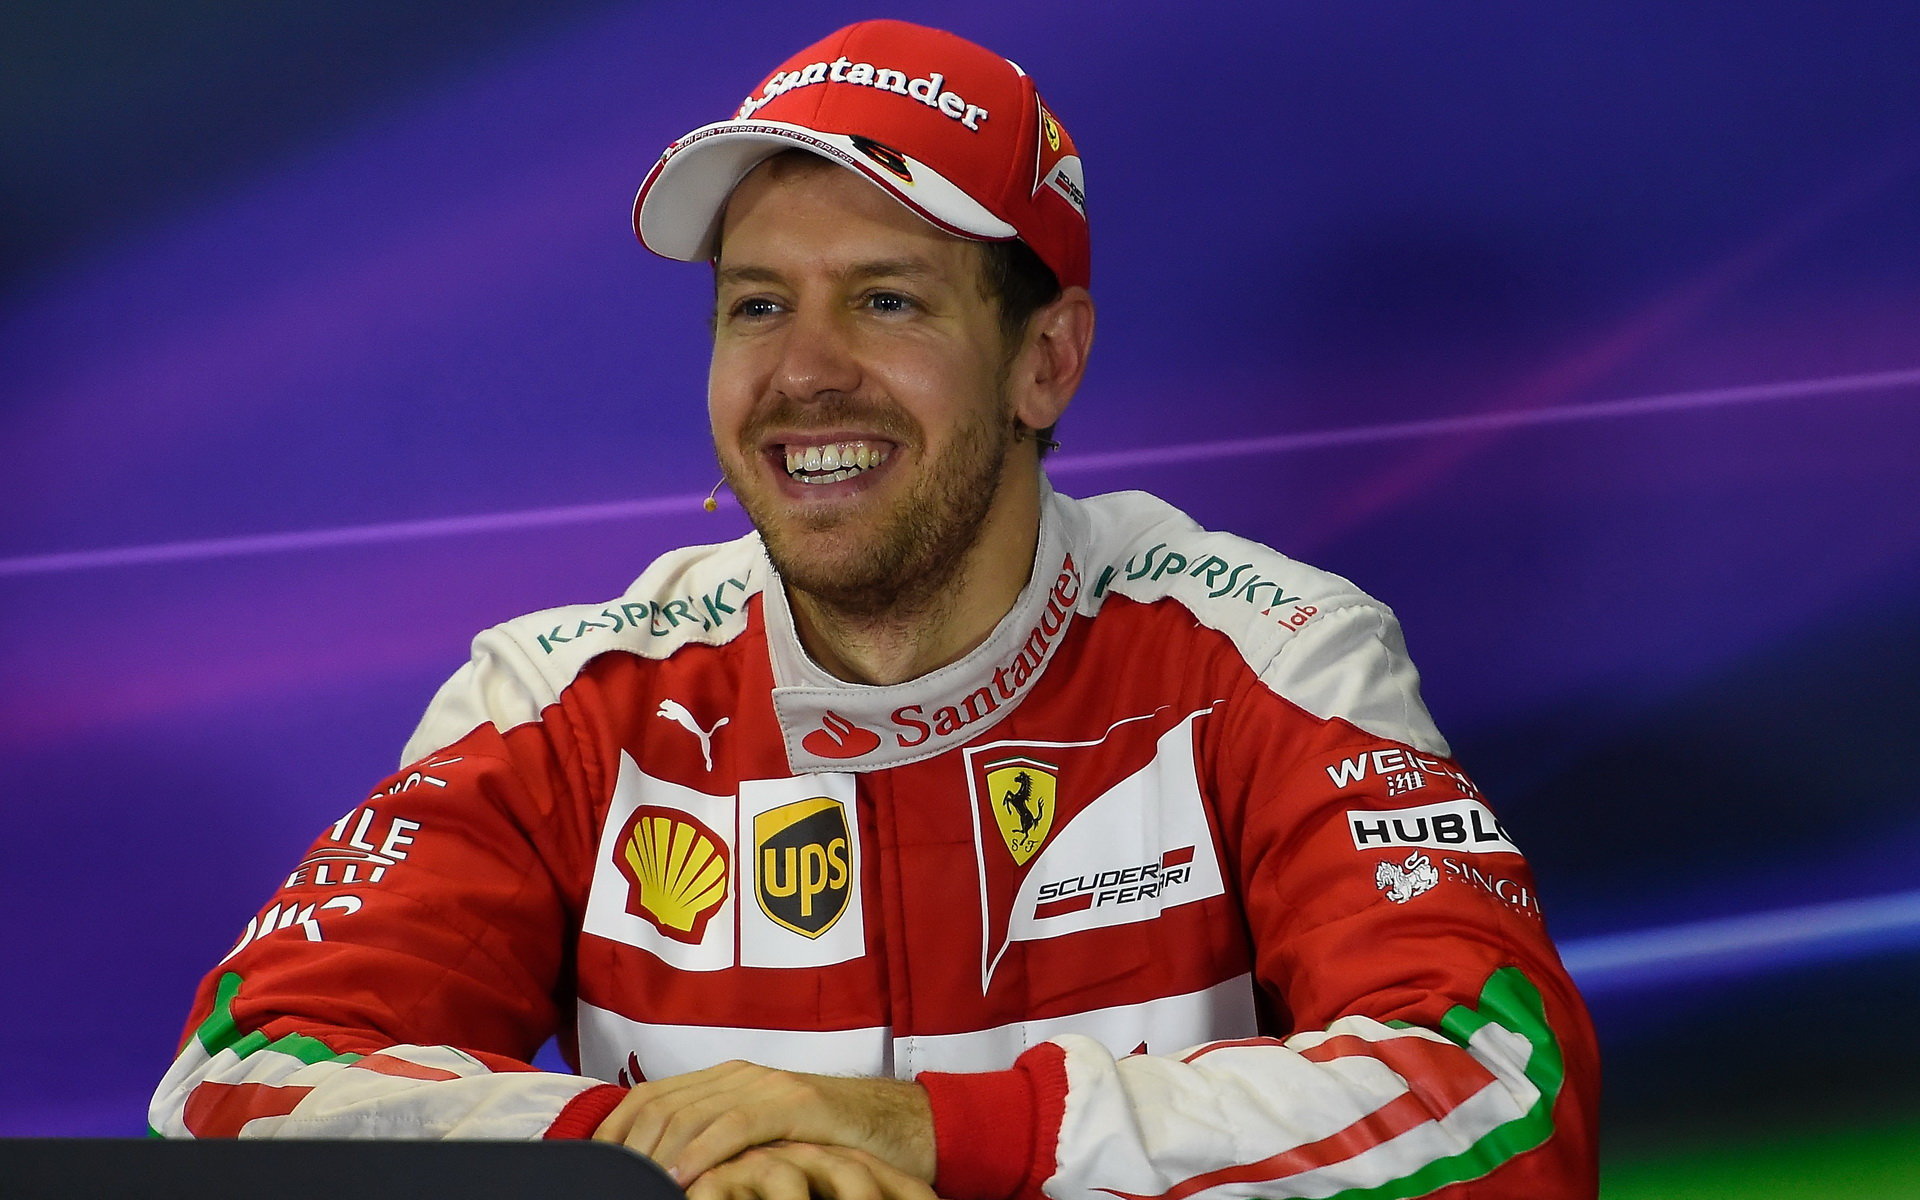 Sebastian Vettel je jedním ze signatářů otevřeného dopisu GPDA